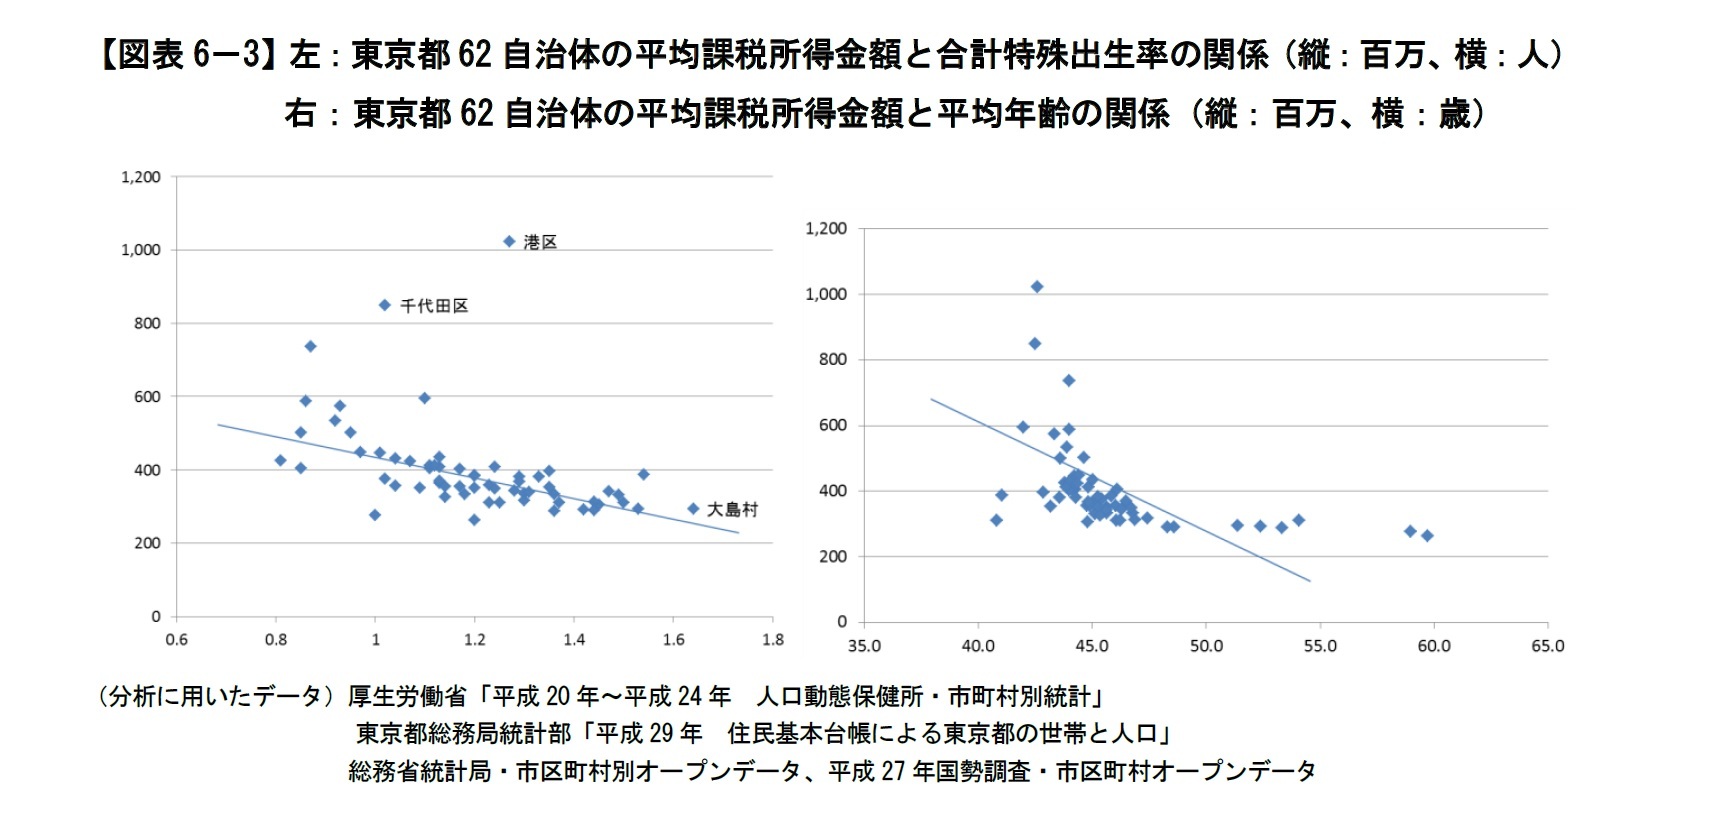 【図表6－3】左：東京都62自治体の平均課税所得金額と合計特殊出生率の関係（縦：百万、横：人）、右：東京都62自治体の平均課税所得金額と平均年齢の関係（縦：百万、横：歳）